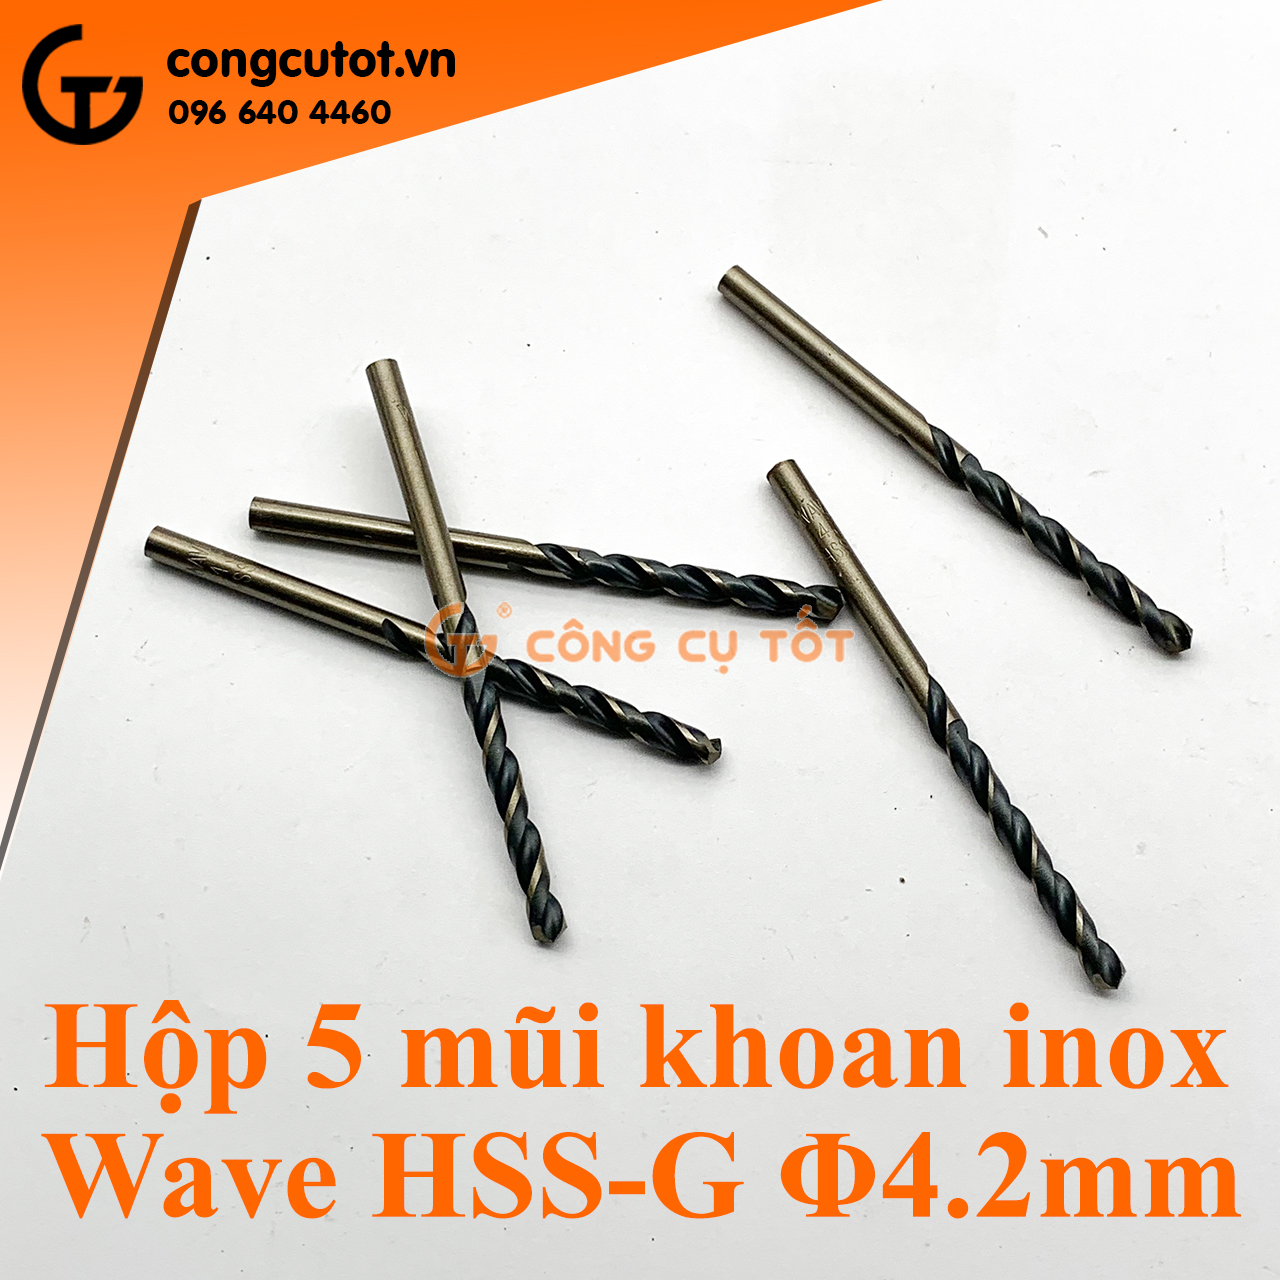 Hộp sản phẩm 5 mũi khoan inox Wave HSS-G đường kính 4.2mm